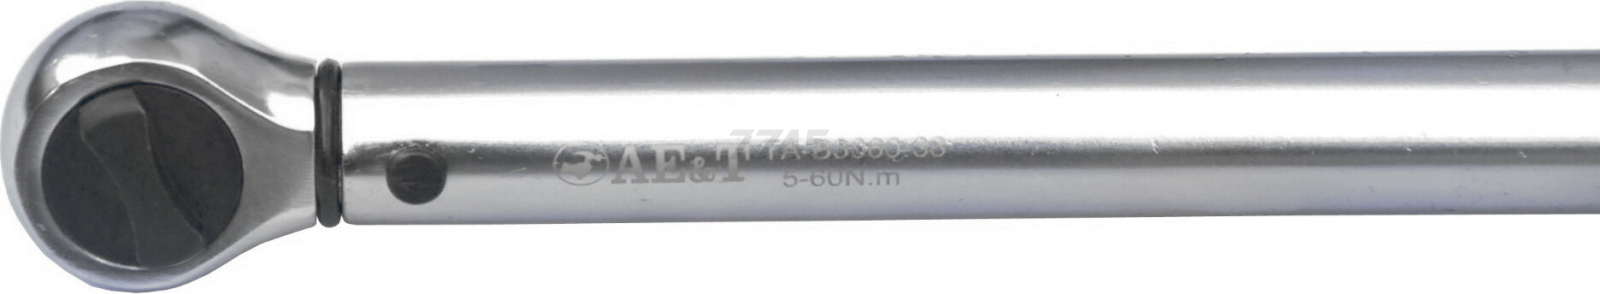 Ключ динамометрический 5-60 Нм 3/8" с окошком индикации AE&T (TA-B3060-38) - Фото 5